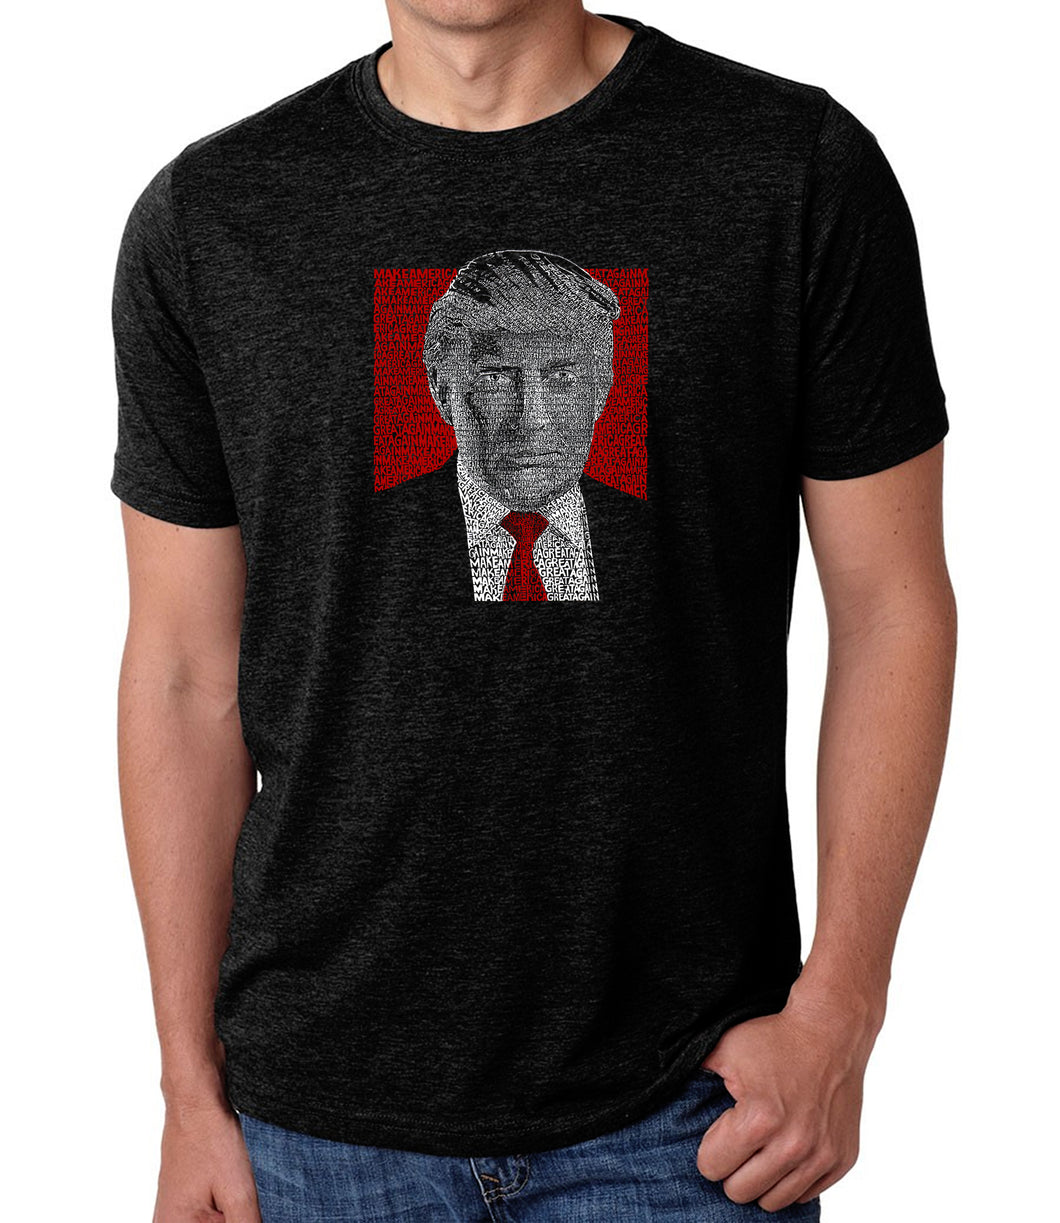 TRUMP Make America Great Again - Men's Premium Blend Word Art T-Shirt